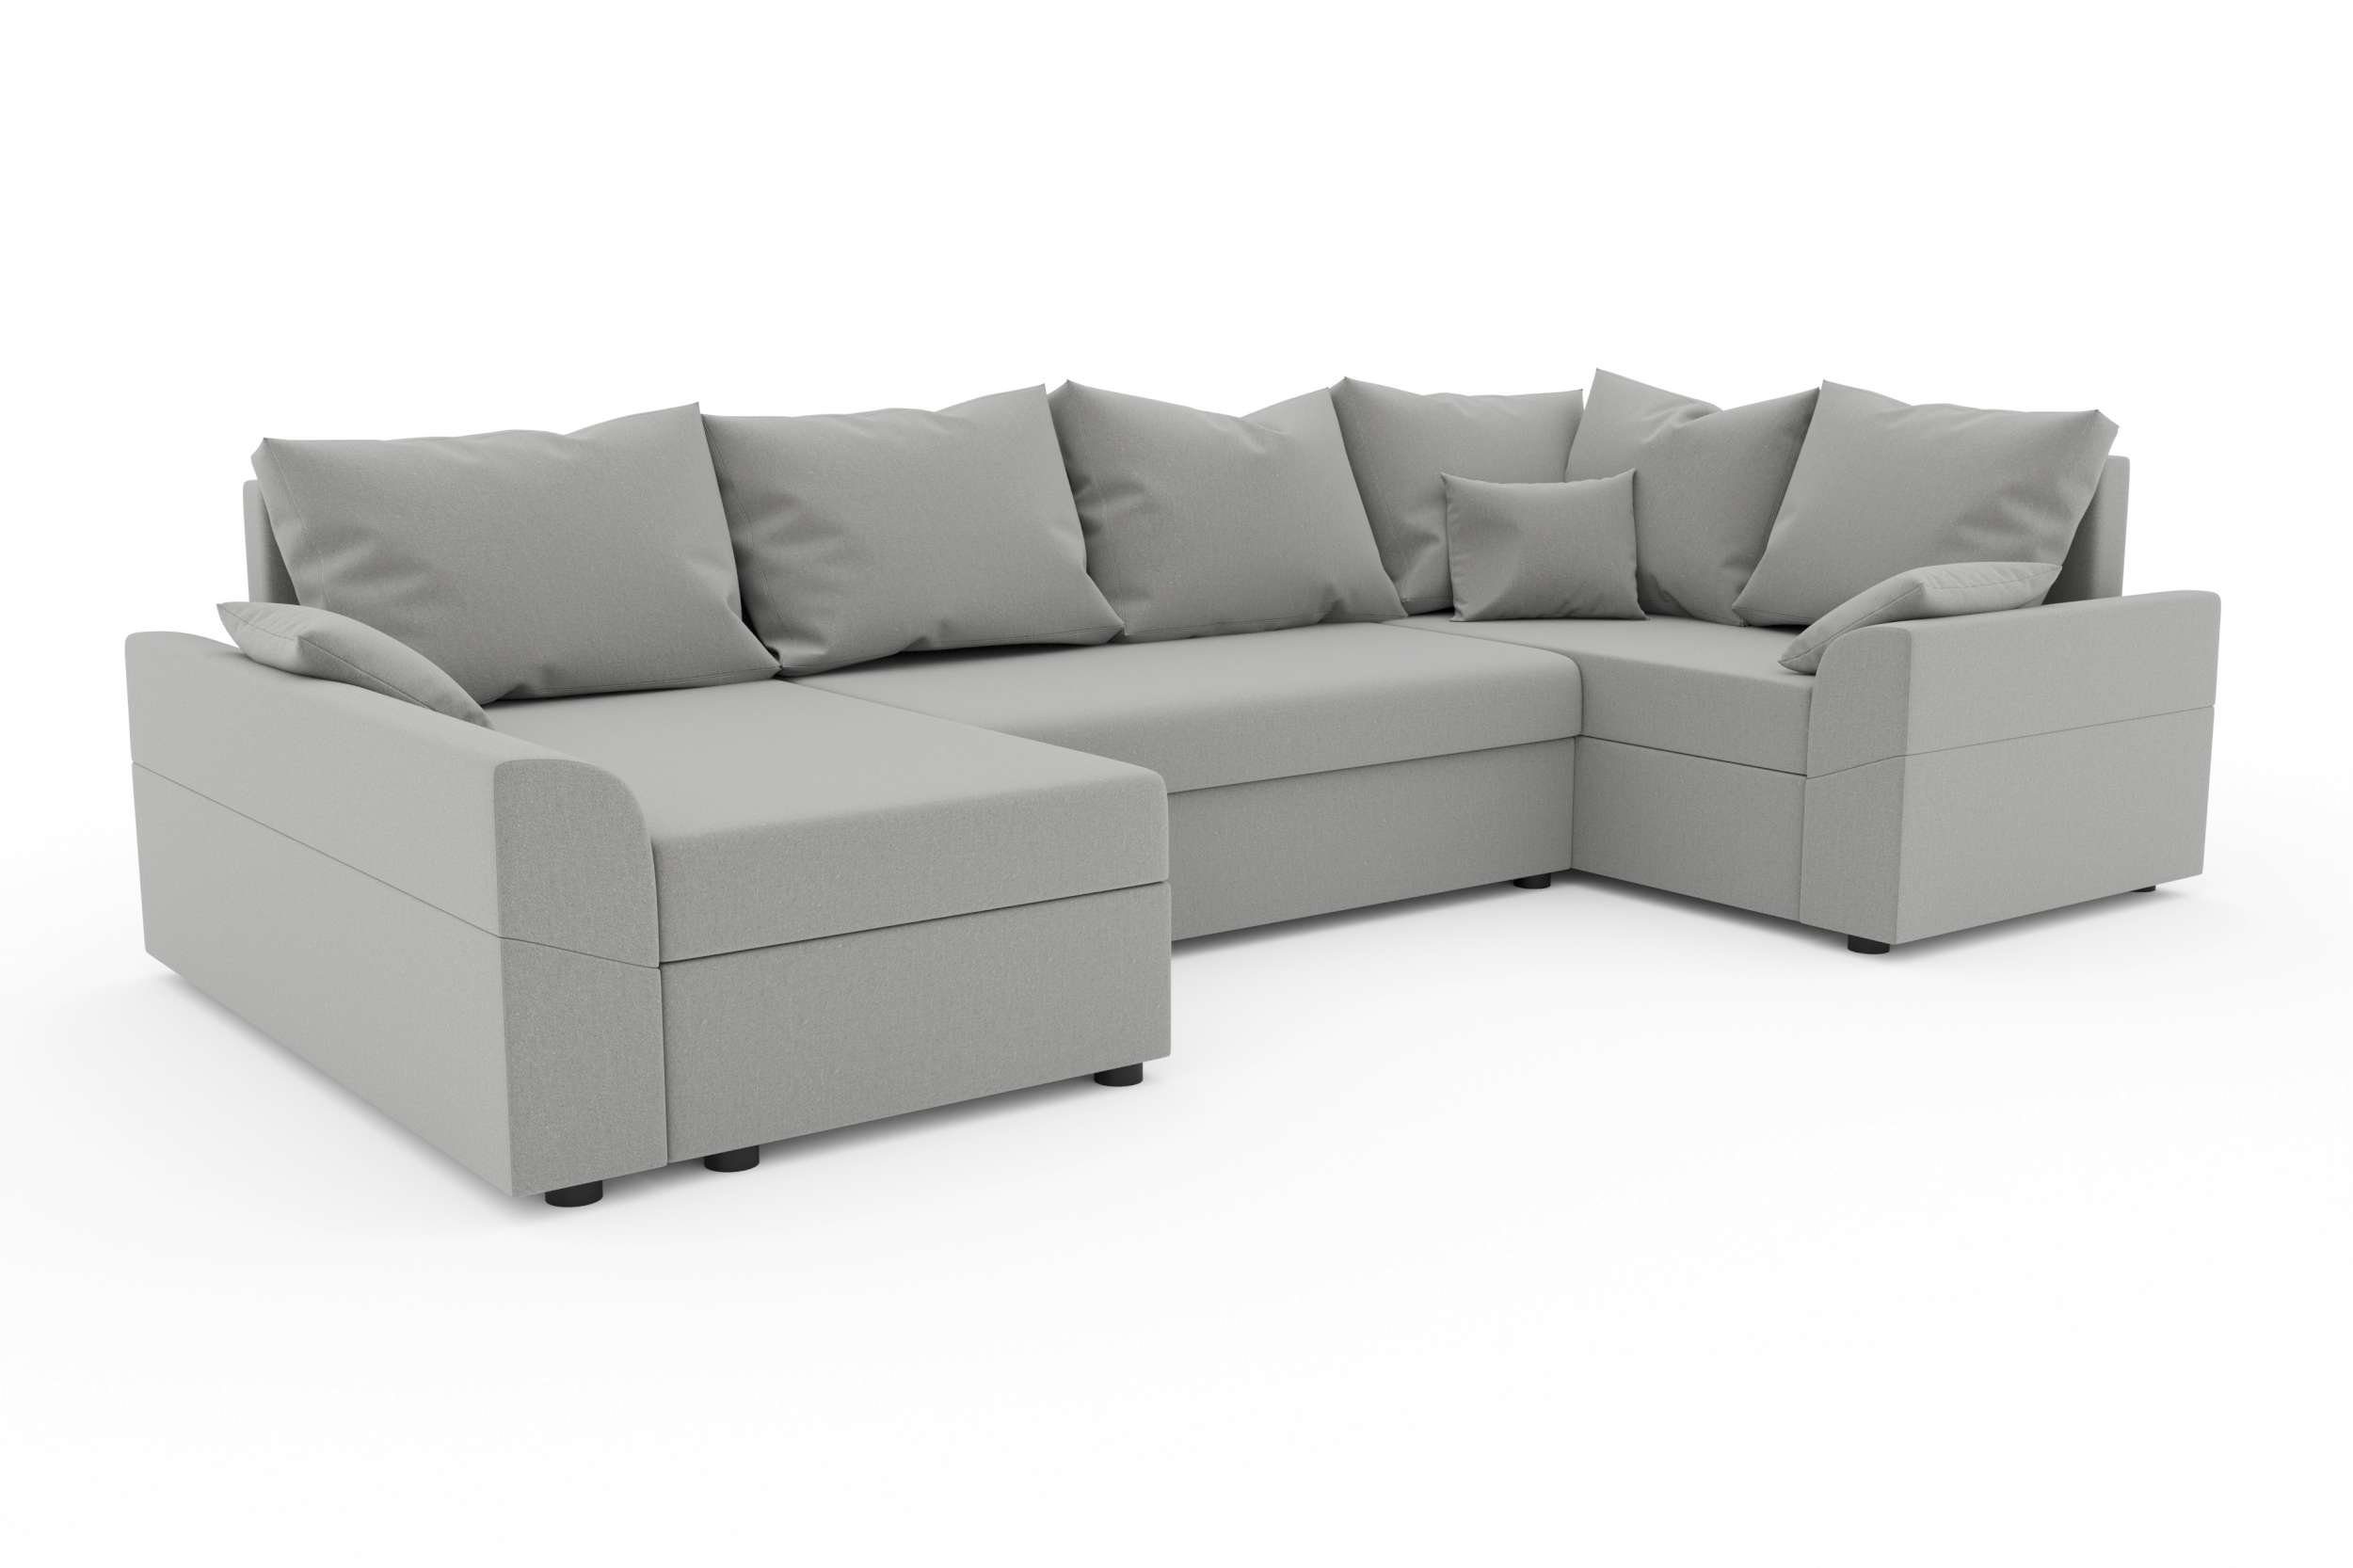 U-Form, Sofa, Bettkasten, Stylefy Bettfunktion, Sitzkomfort, Design mit mit Modern Eckcouch, Bailey, Wohnlandschaft